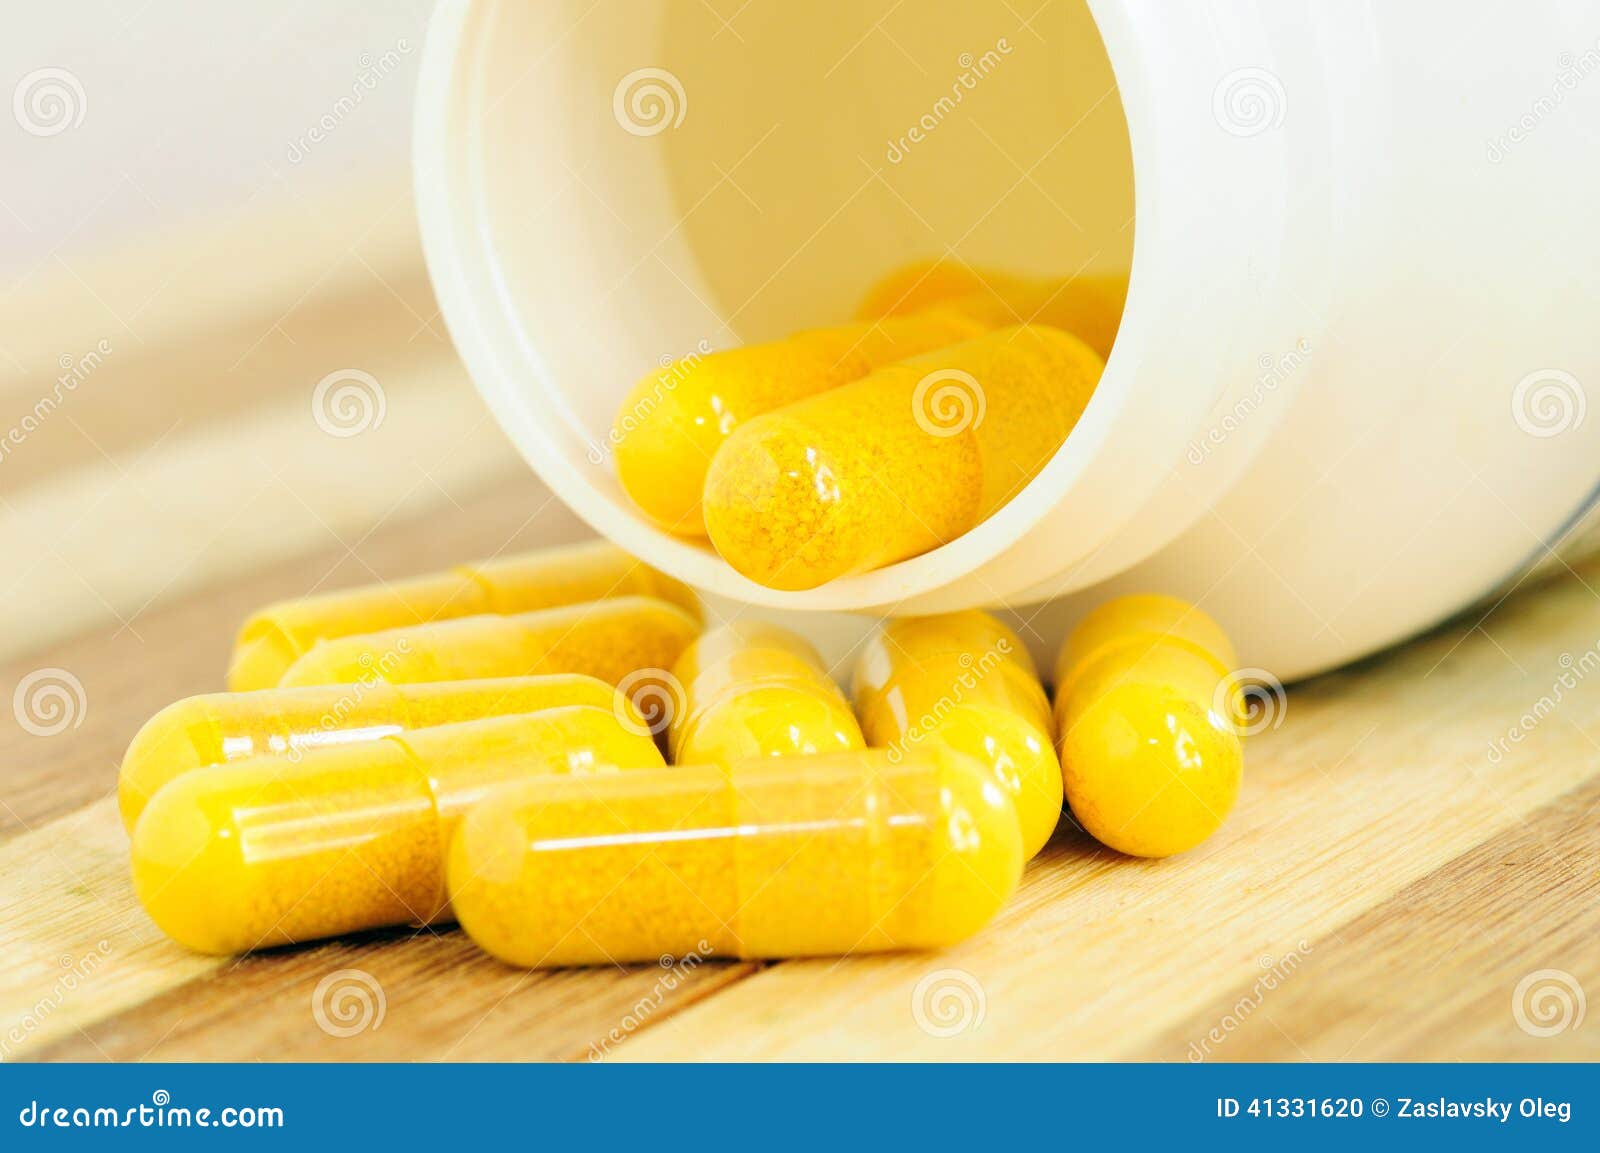 yellow capsules.